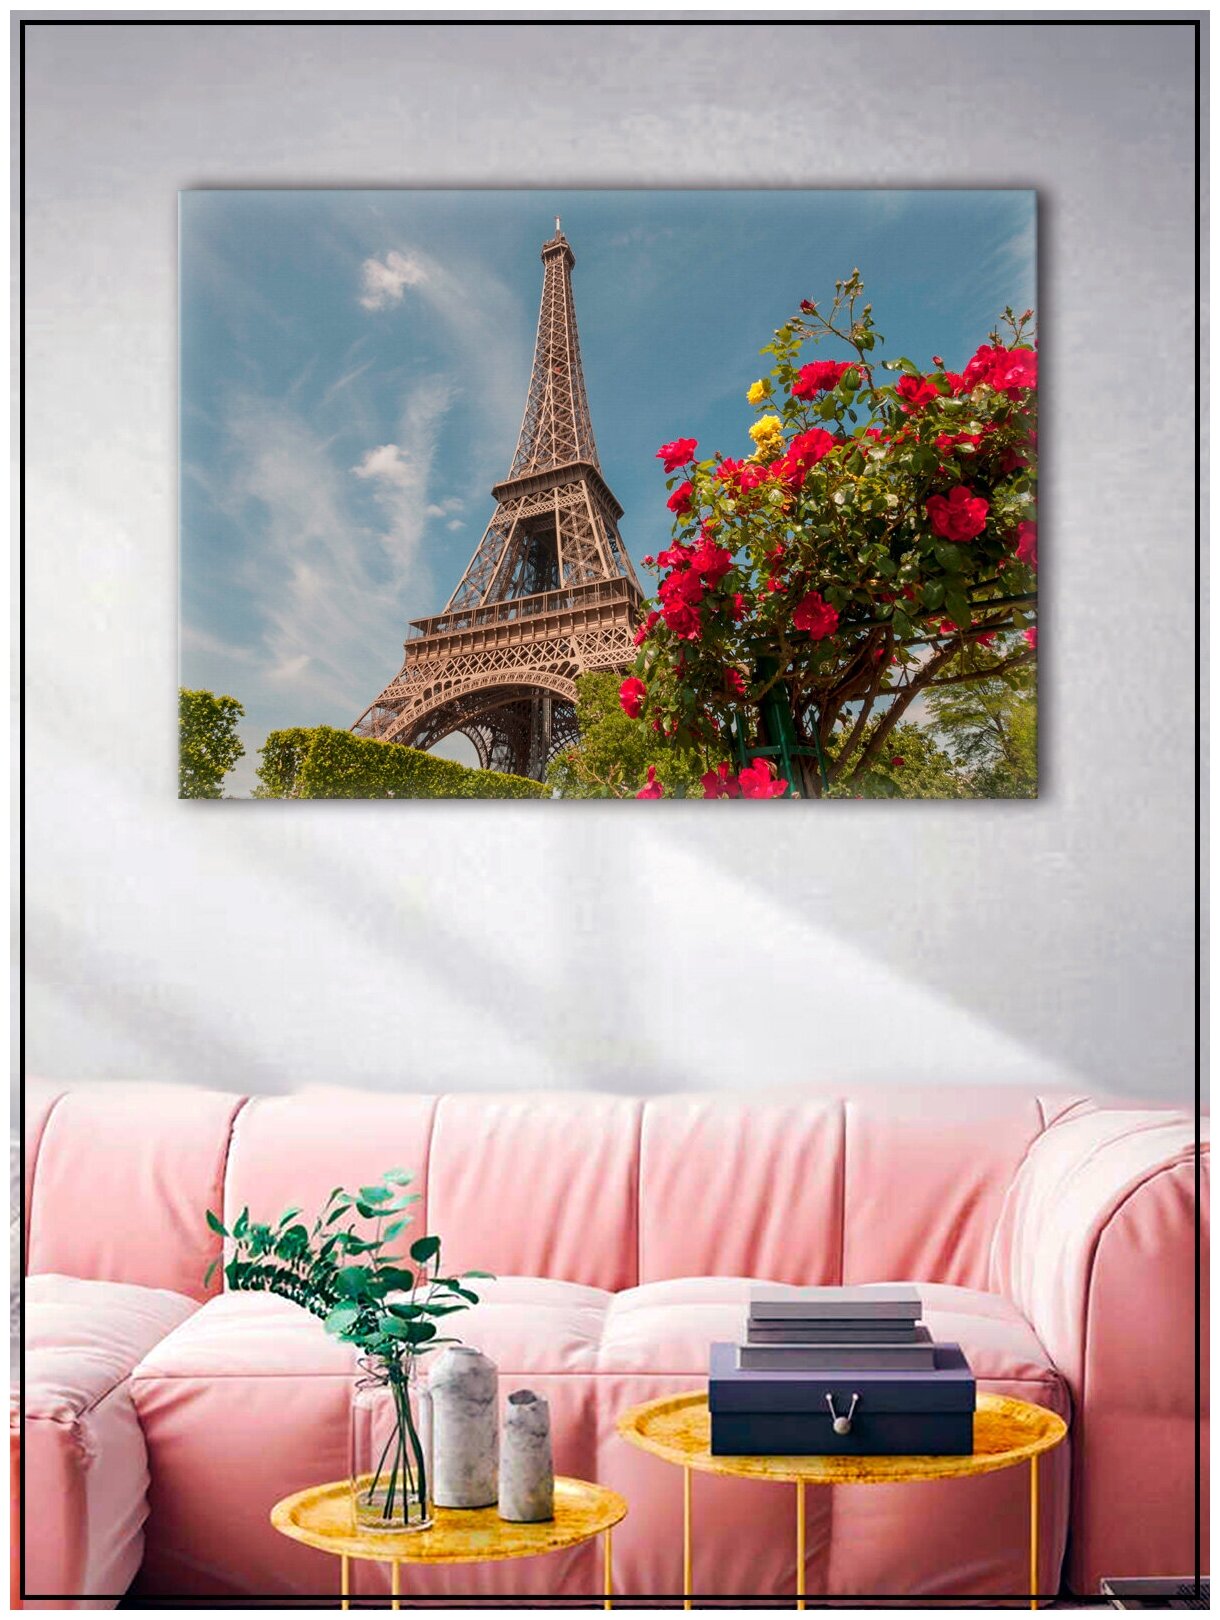 Картина для интерьера на натуральном хлопковом холсте "Эйфелева башня", 30*40см, холст на подрамнике, картина в подарок для дома